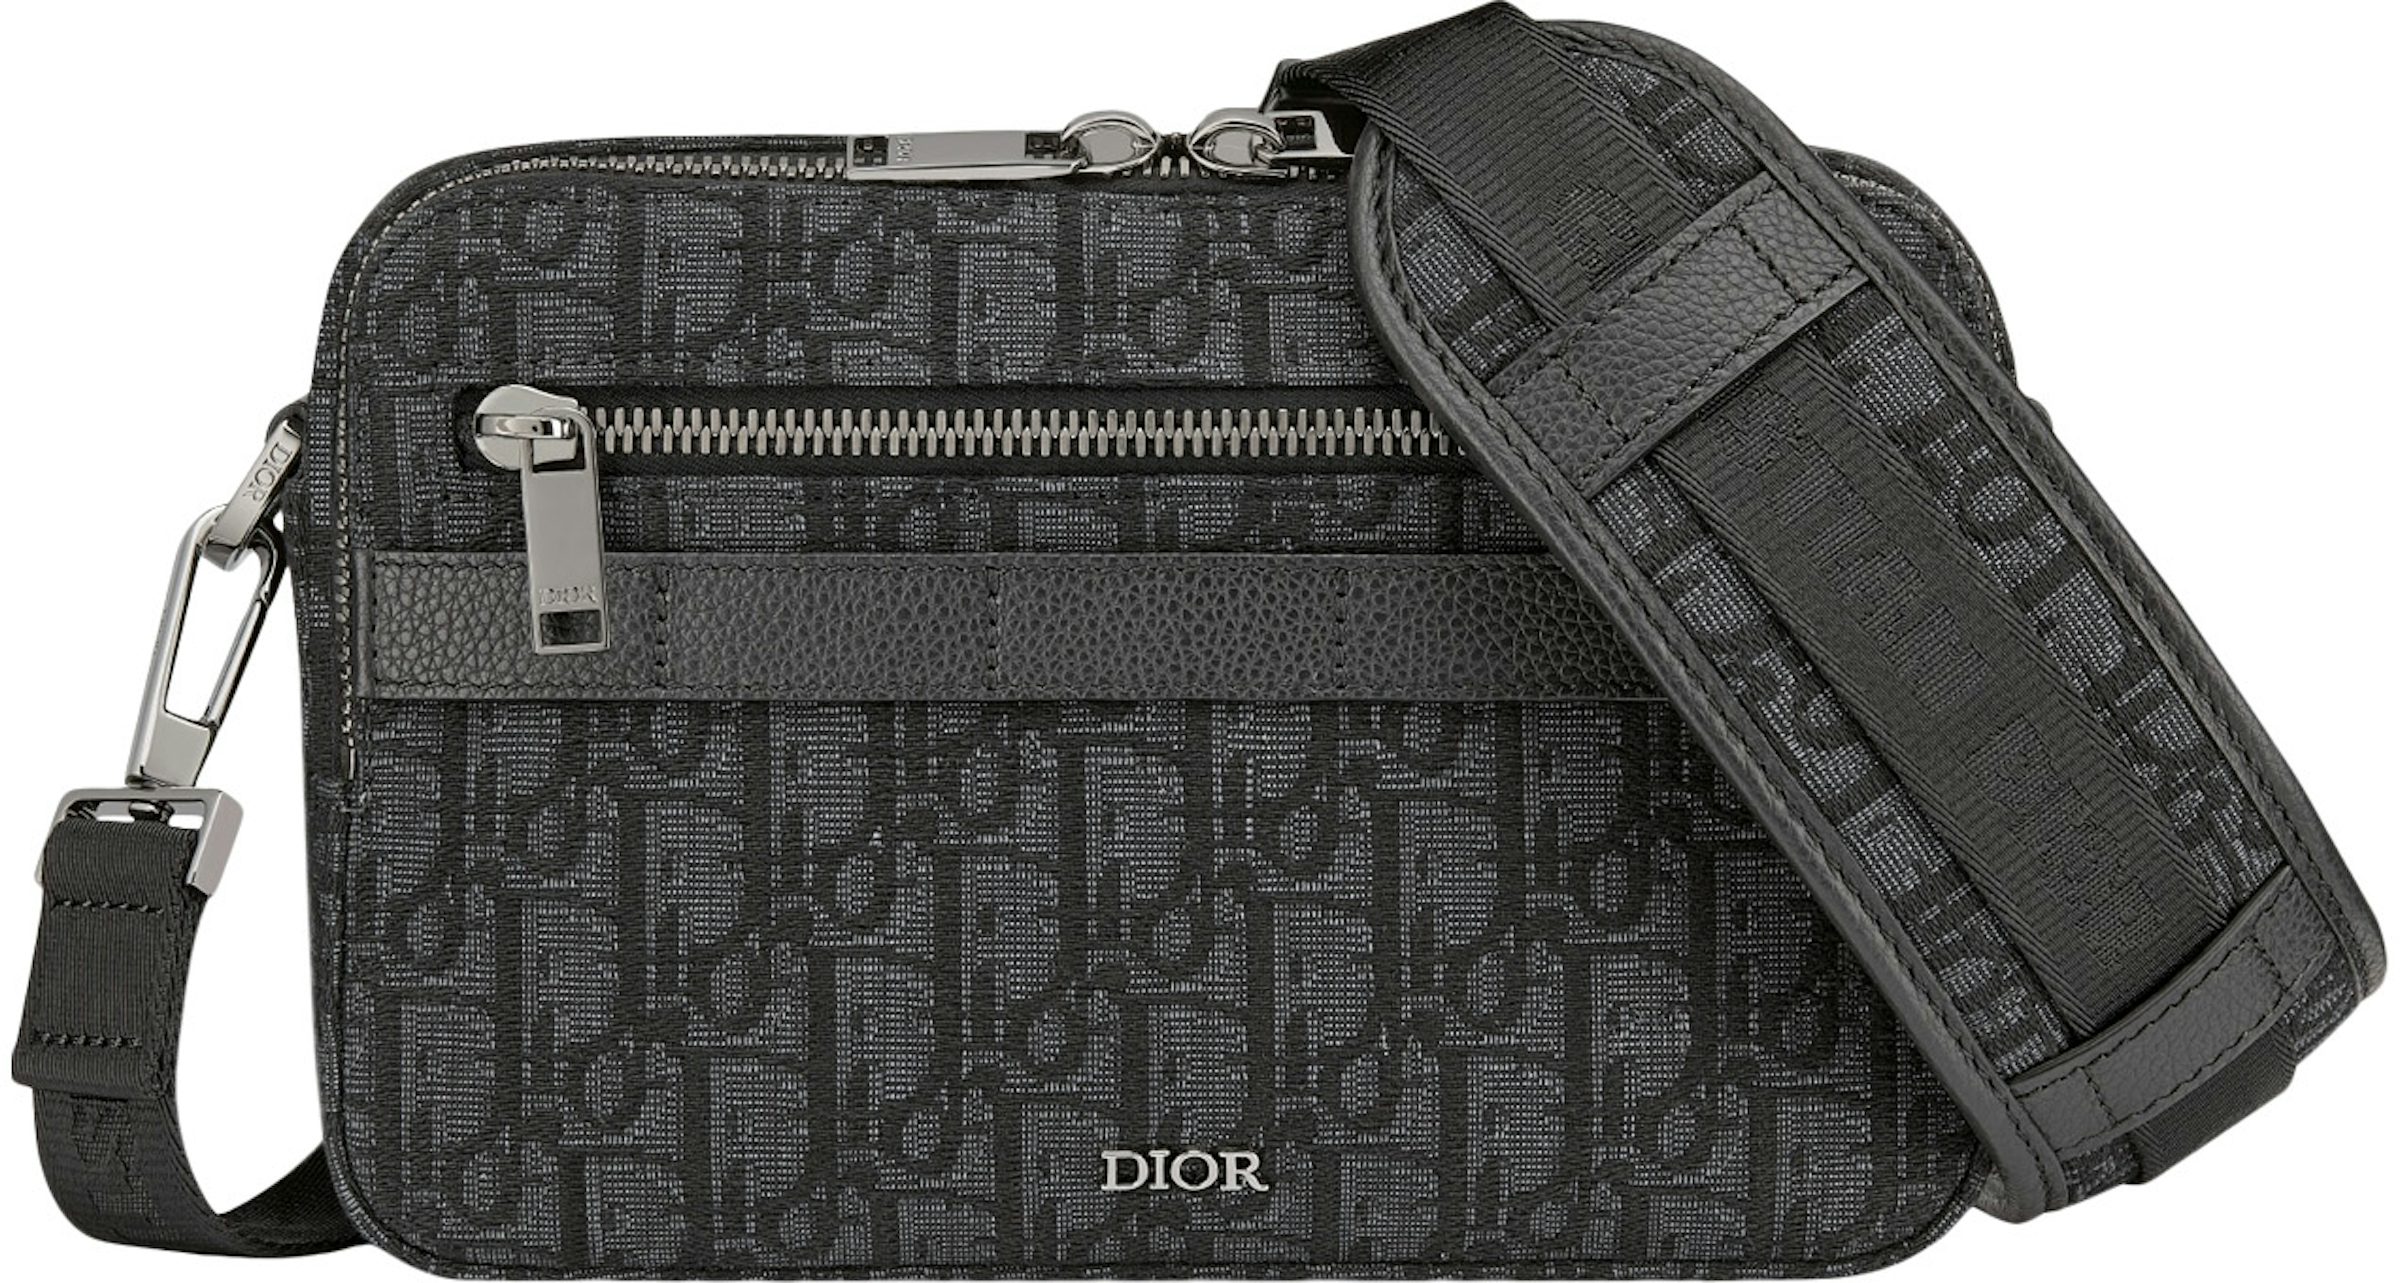 Safari Bag with Strap Beige and Black Dior Oblique Jacquard